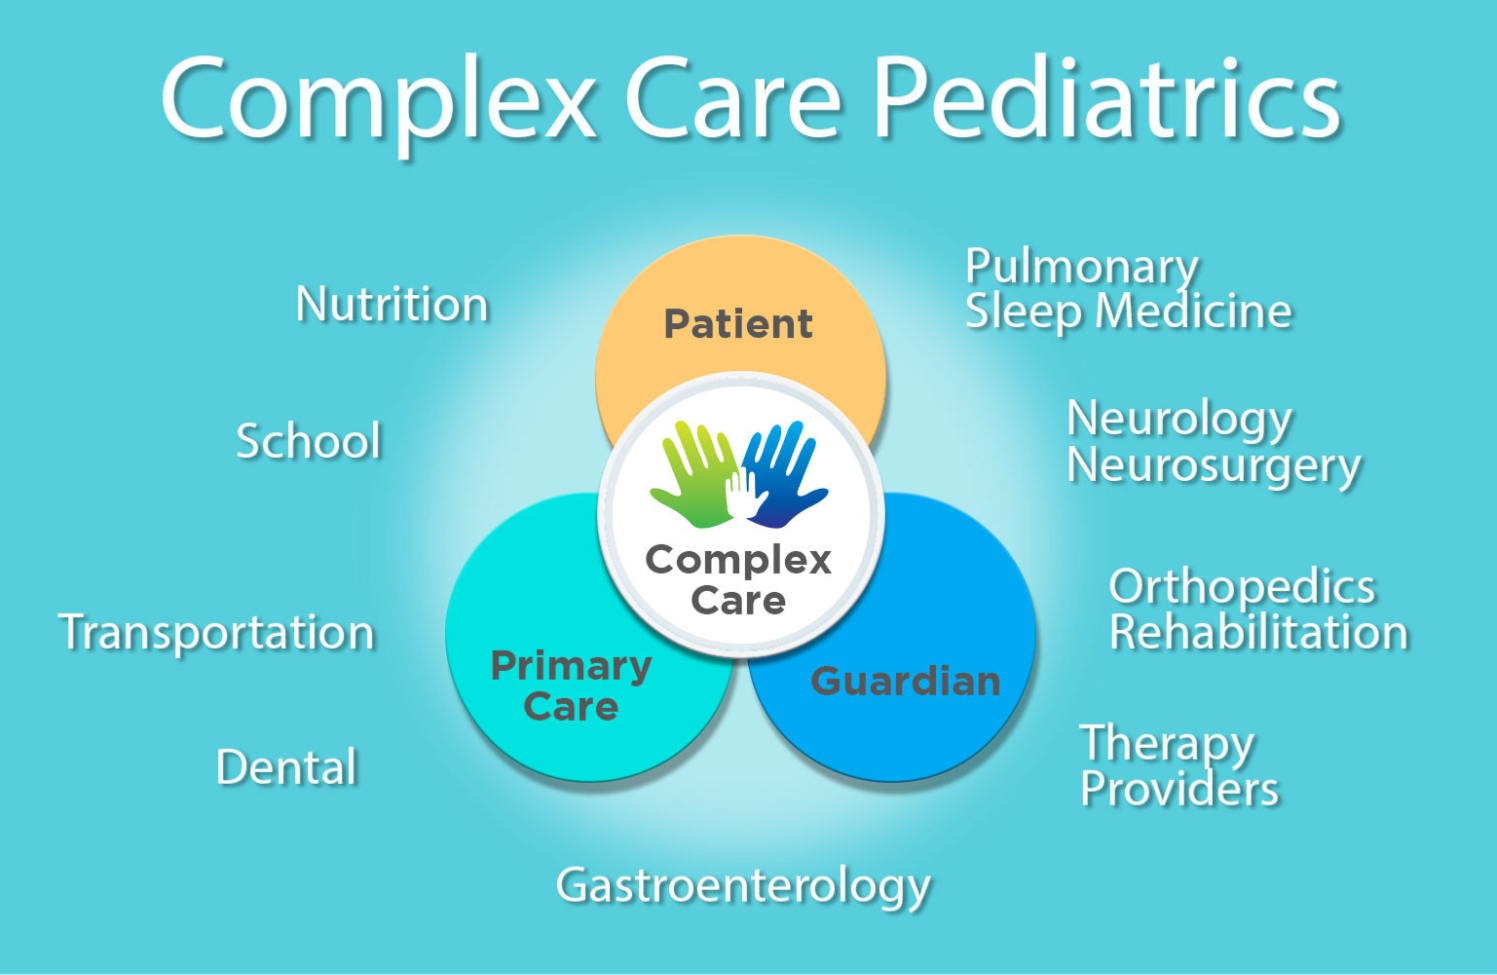 Complex Care Pediatrics at Gillette